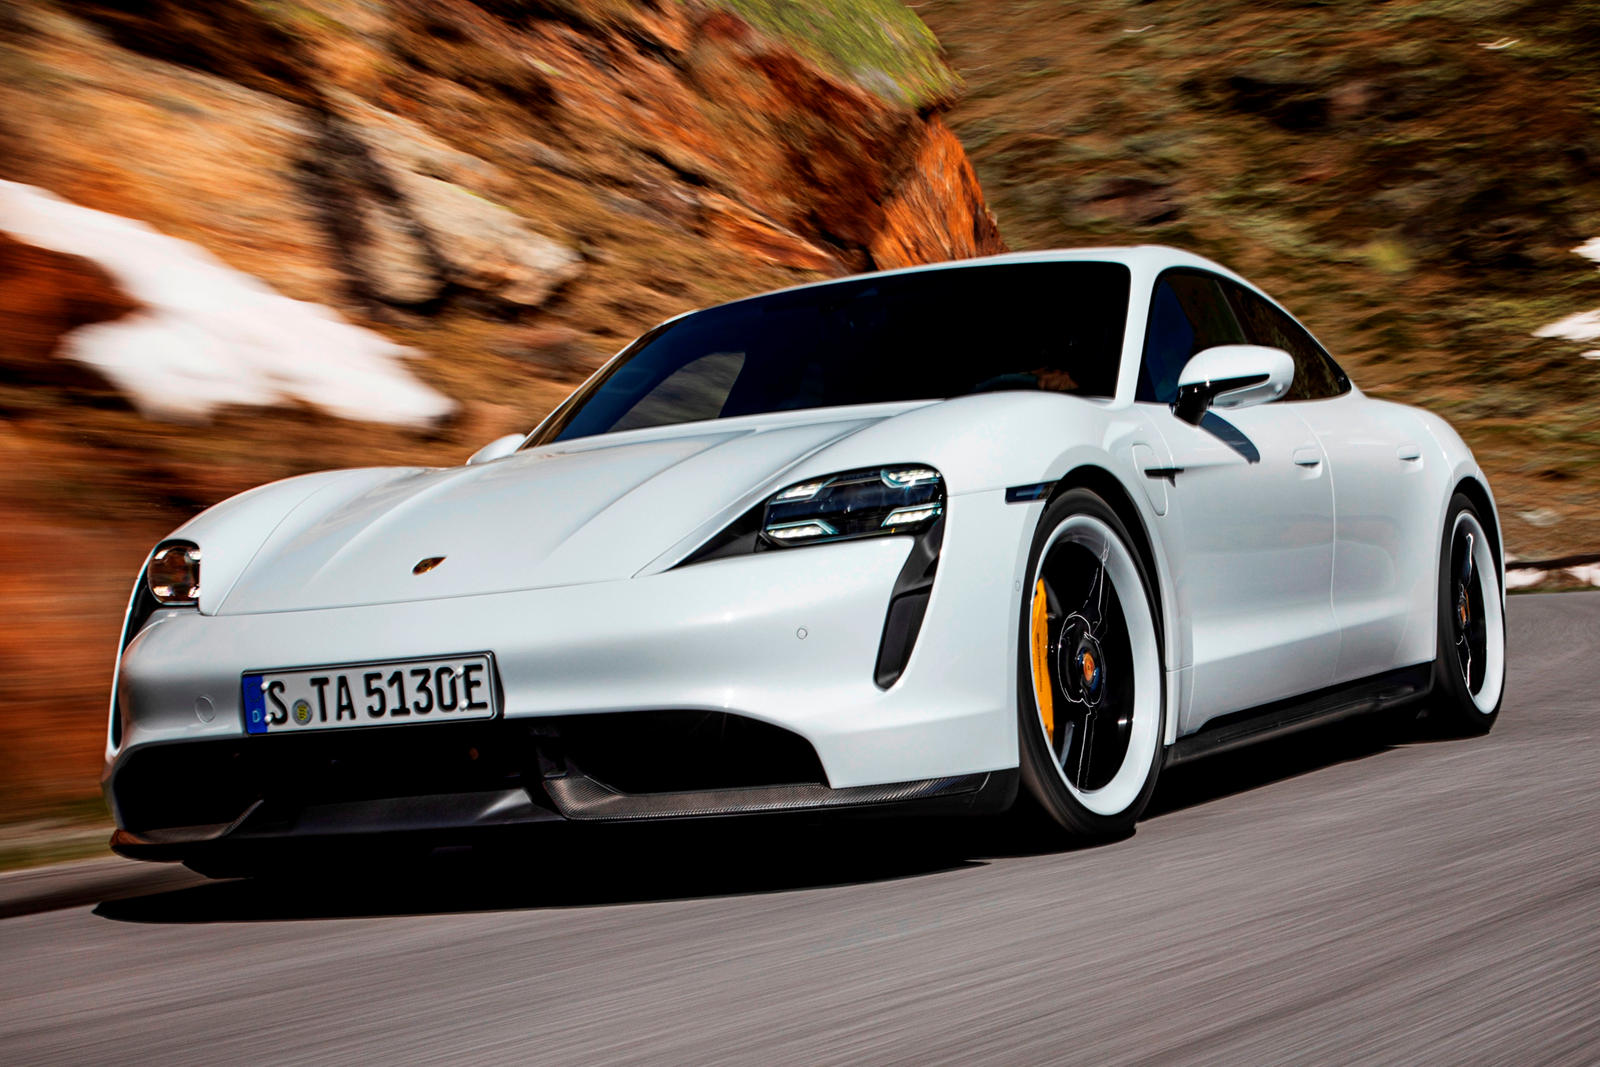 Первый полностью электрический автомобиль Porsche уже имеет оглушительный успех. В первой половине этого года было поставлено около 4500 экземпляров Porsche Taycan. Новинка 2020 модельного года, Taycan вернется в 2021 году с новыми технологиями, таки